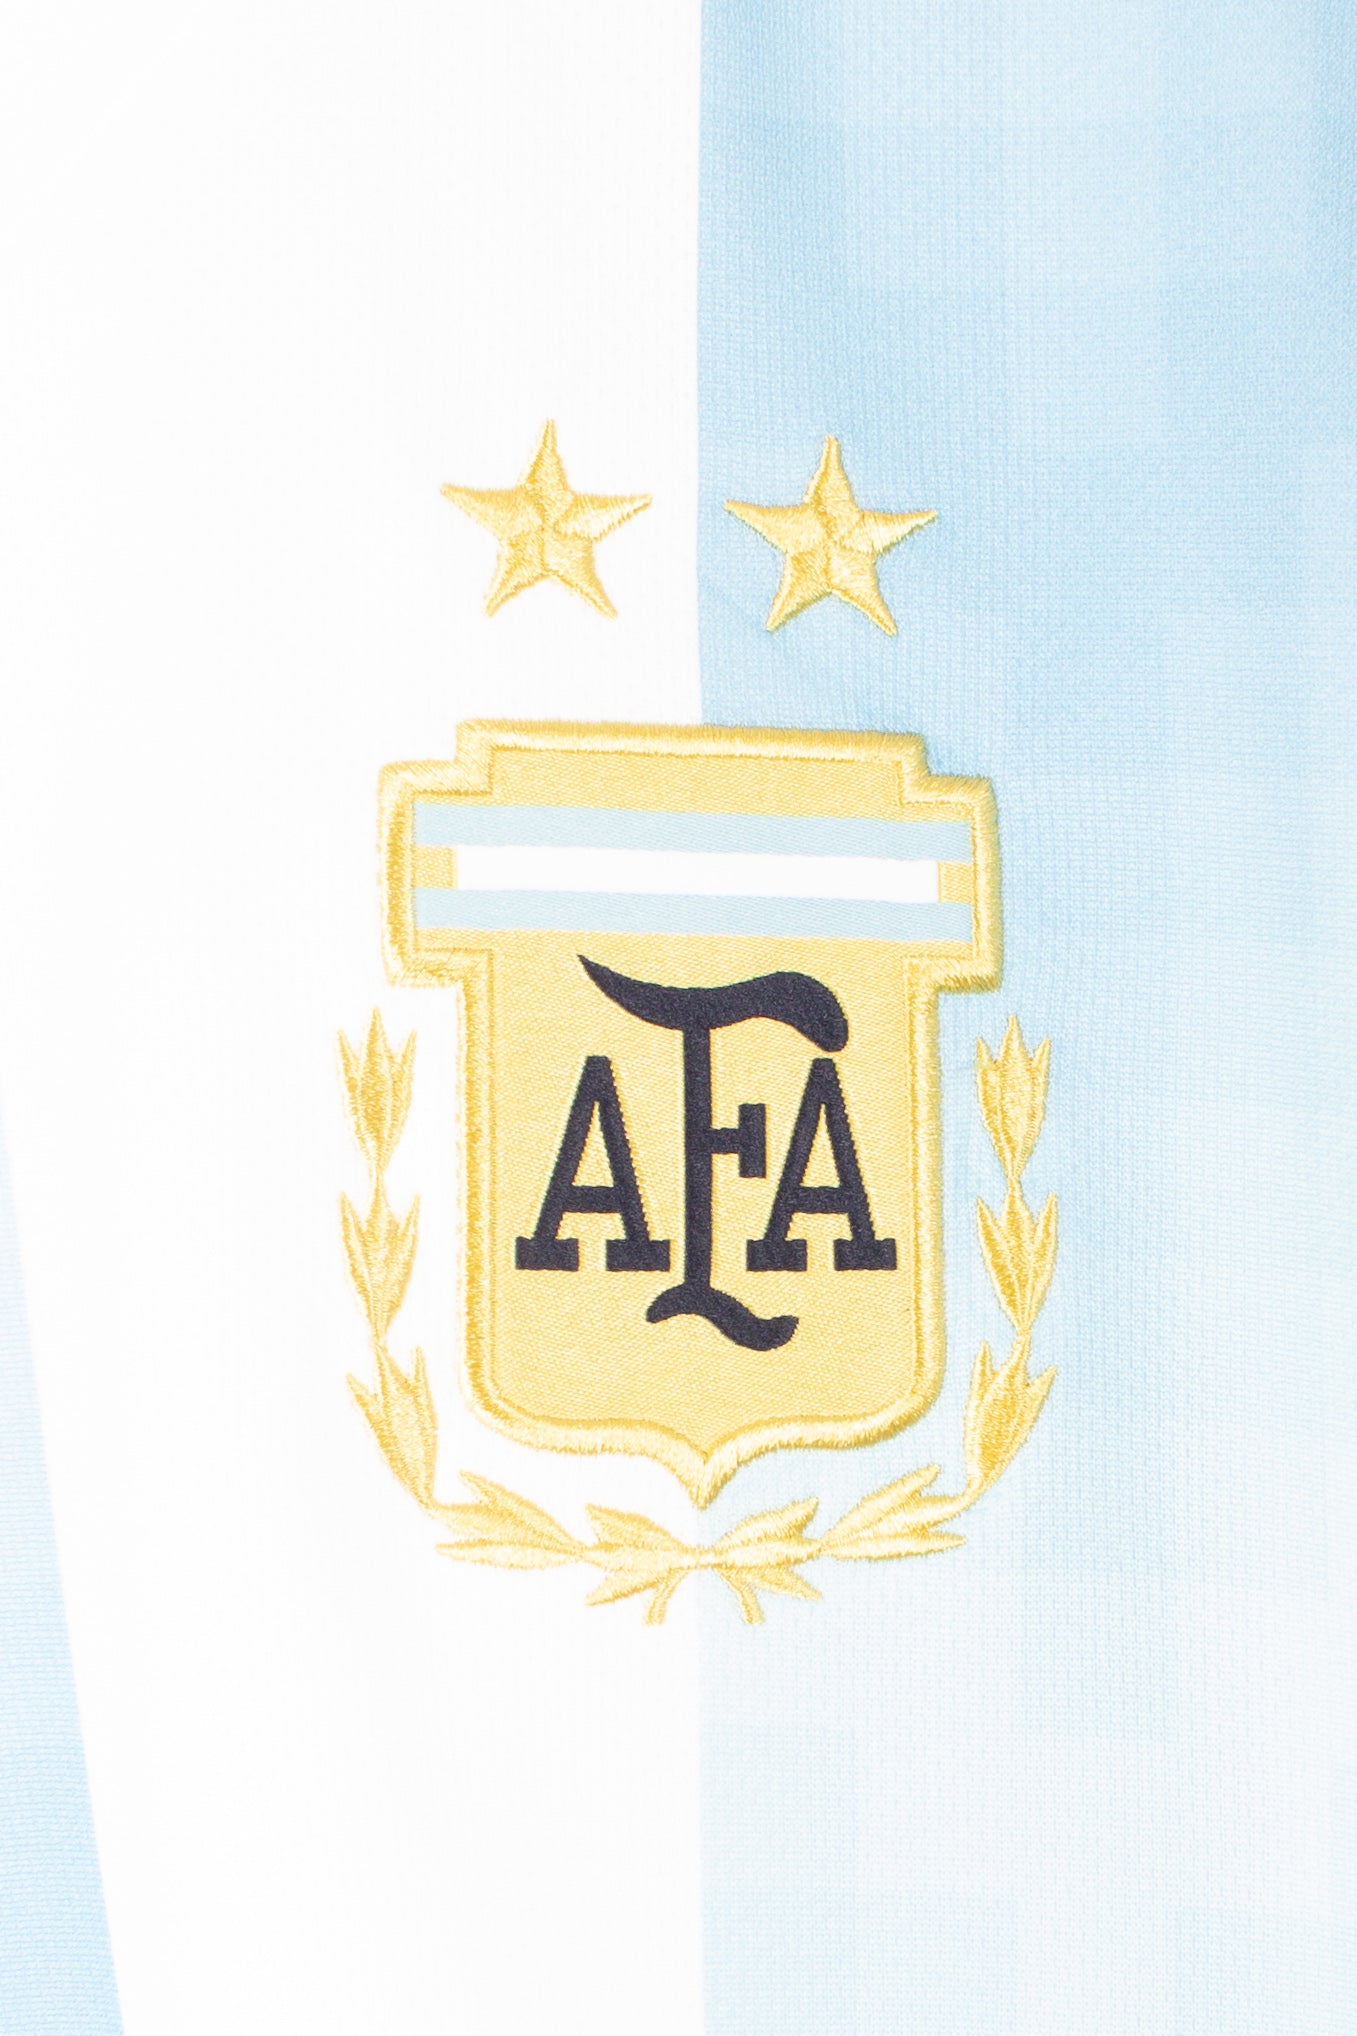 Argentina 2018 Home Shirt (XL)